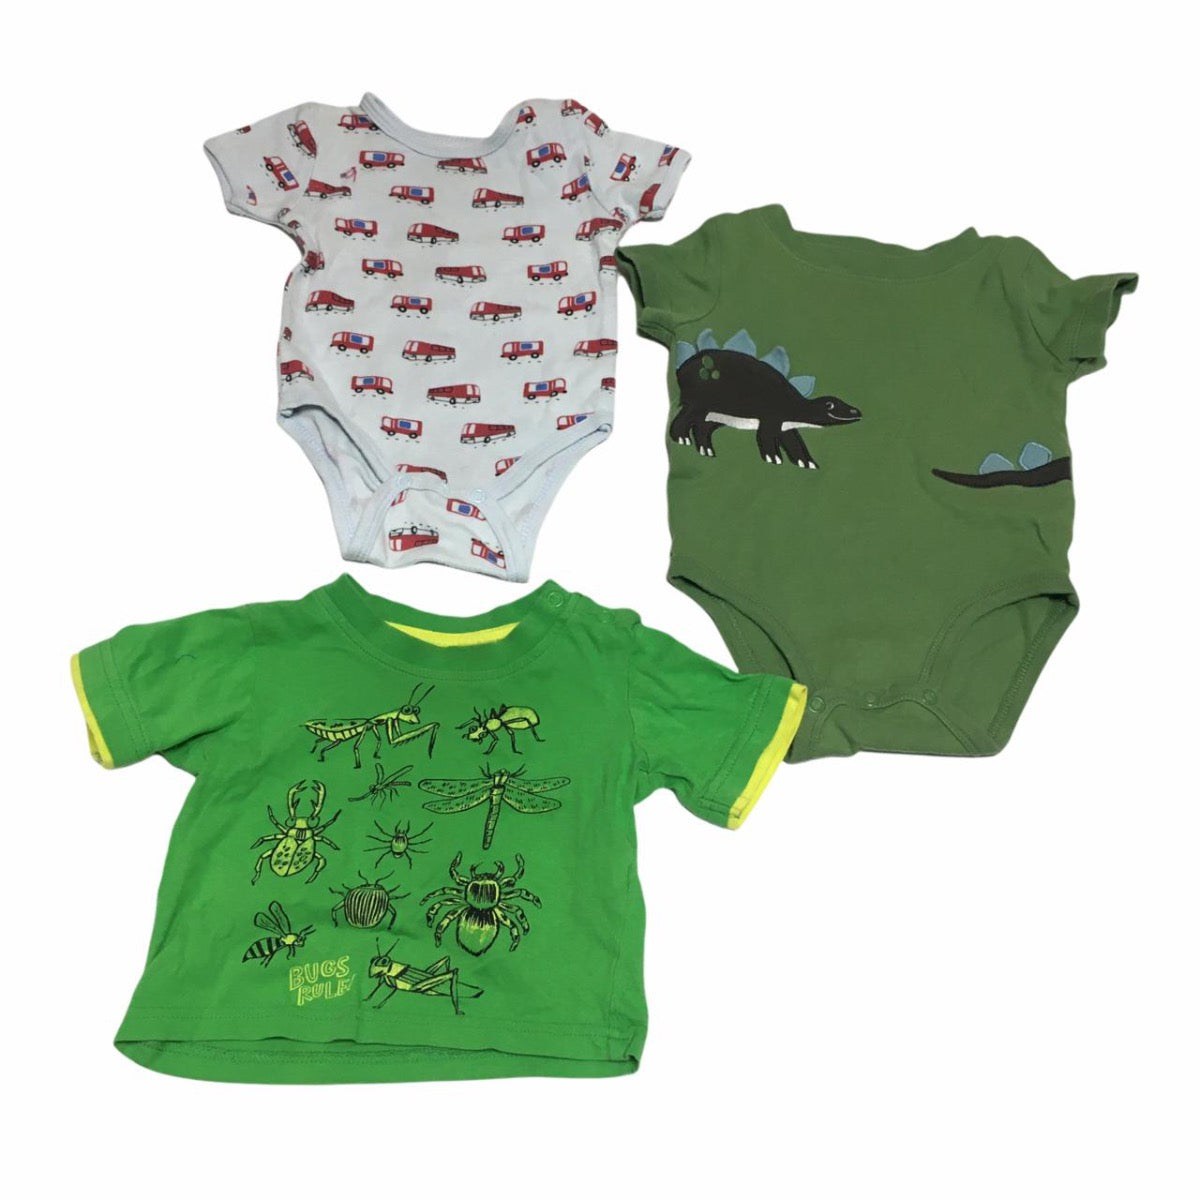 Lotes de ropa usada para bebés hasta los 2 años - Travieso - Tienda Travieso